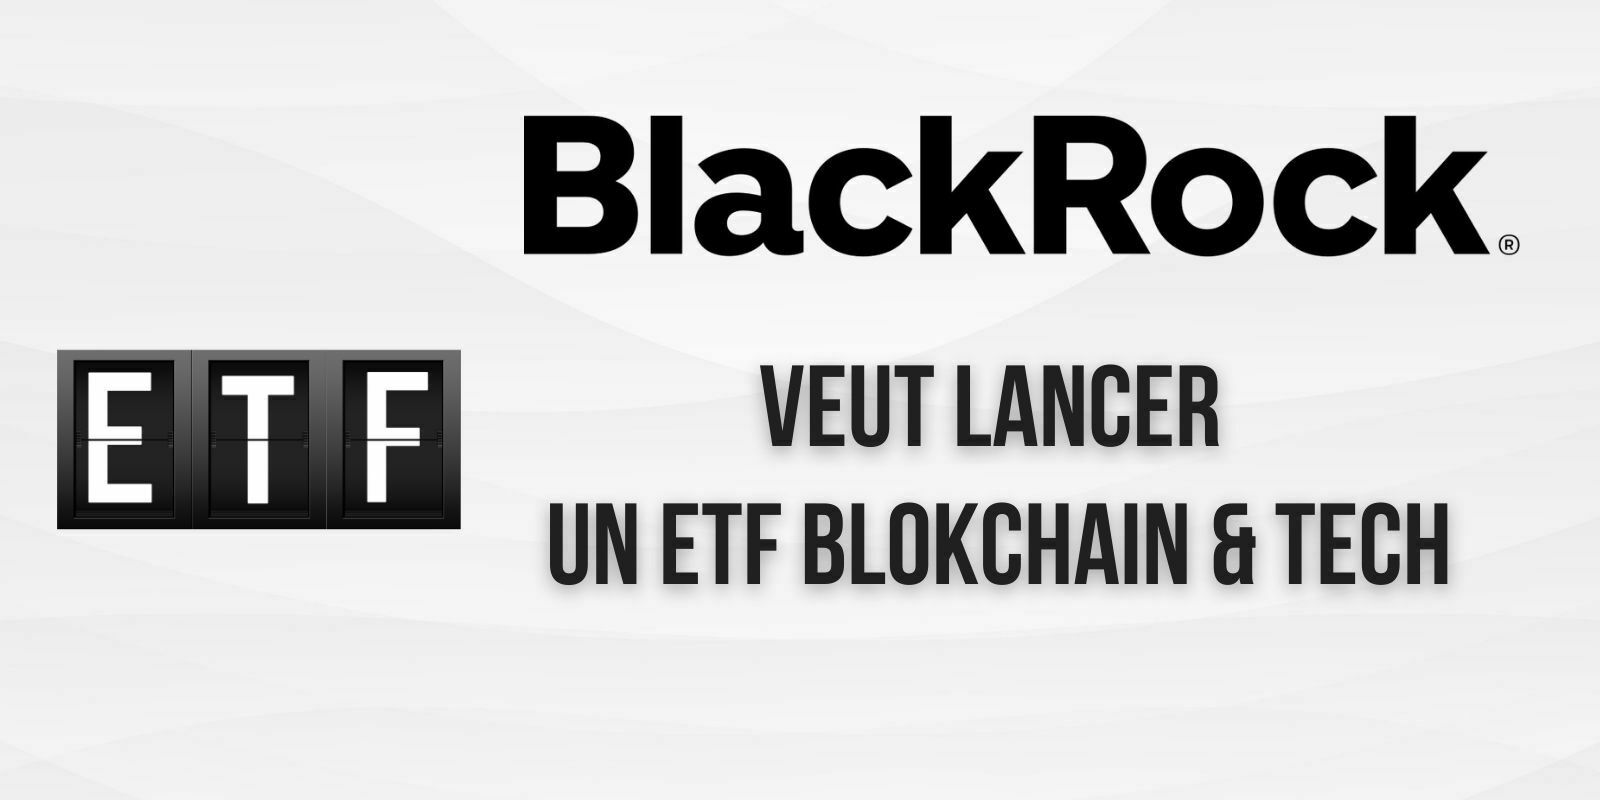 BlackRock veut créer un ETF dédié aux entreprises de l’industrie blockchain